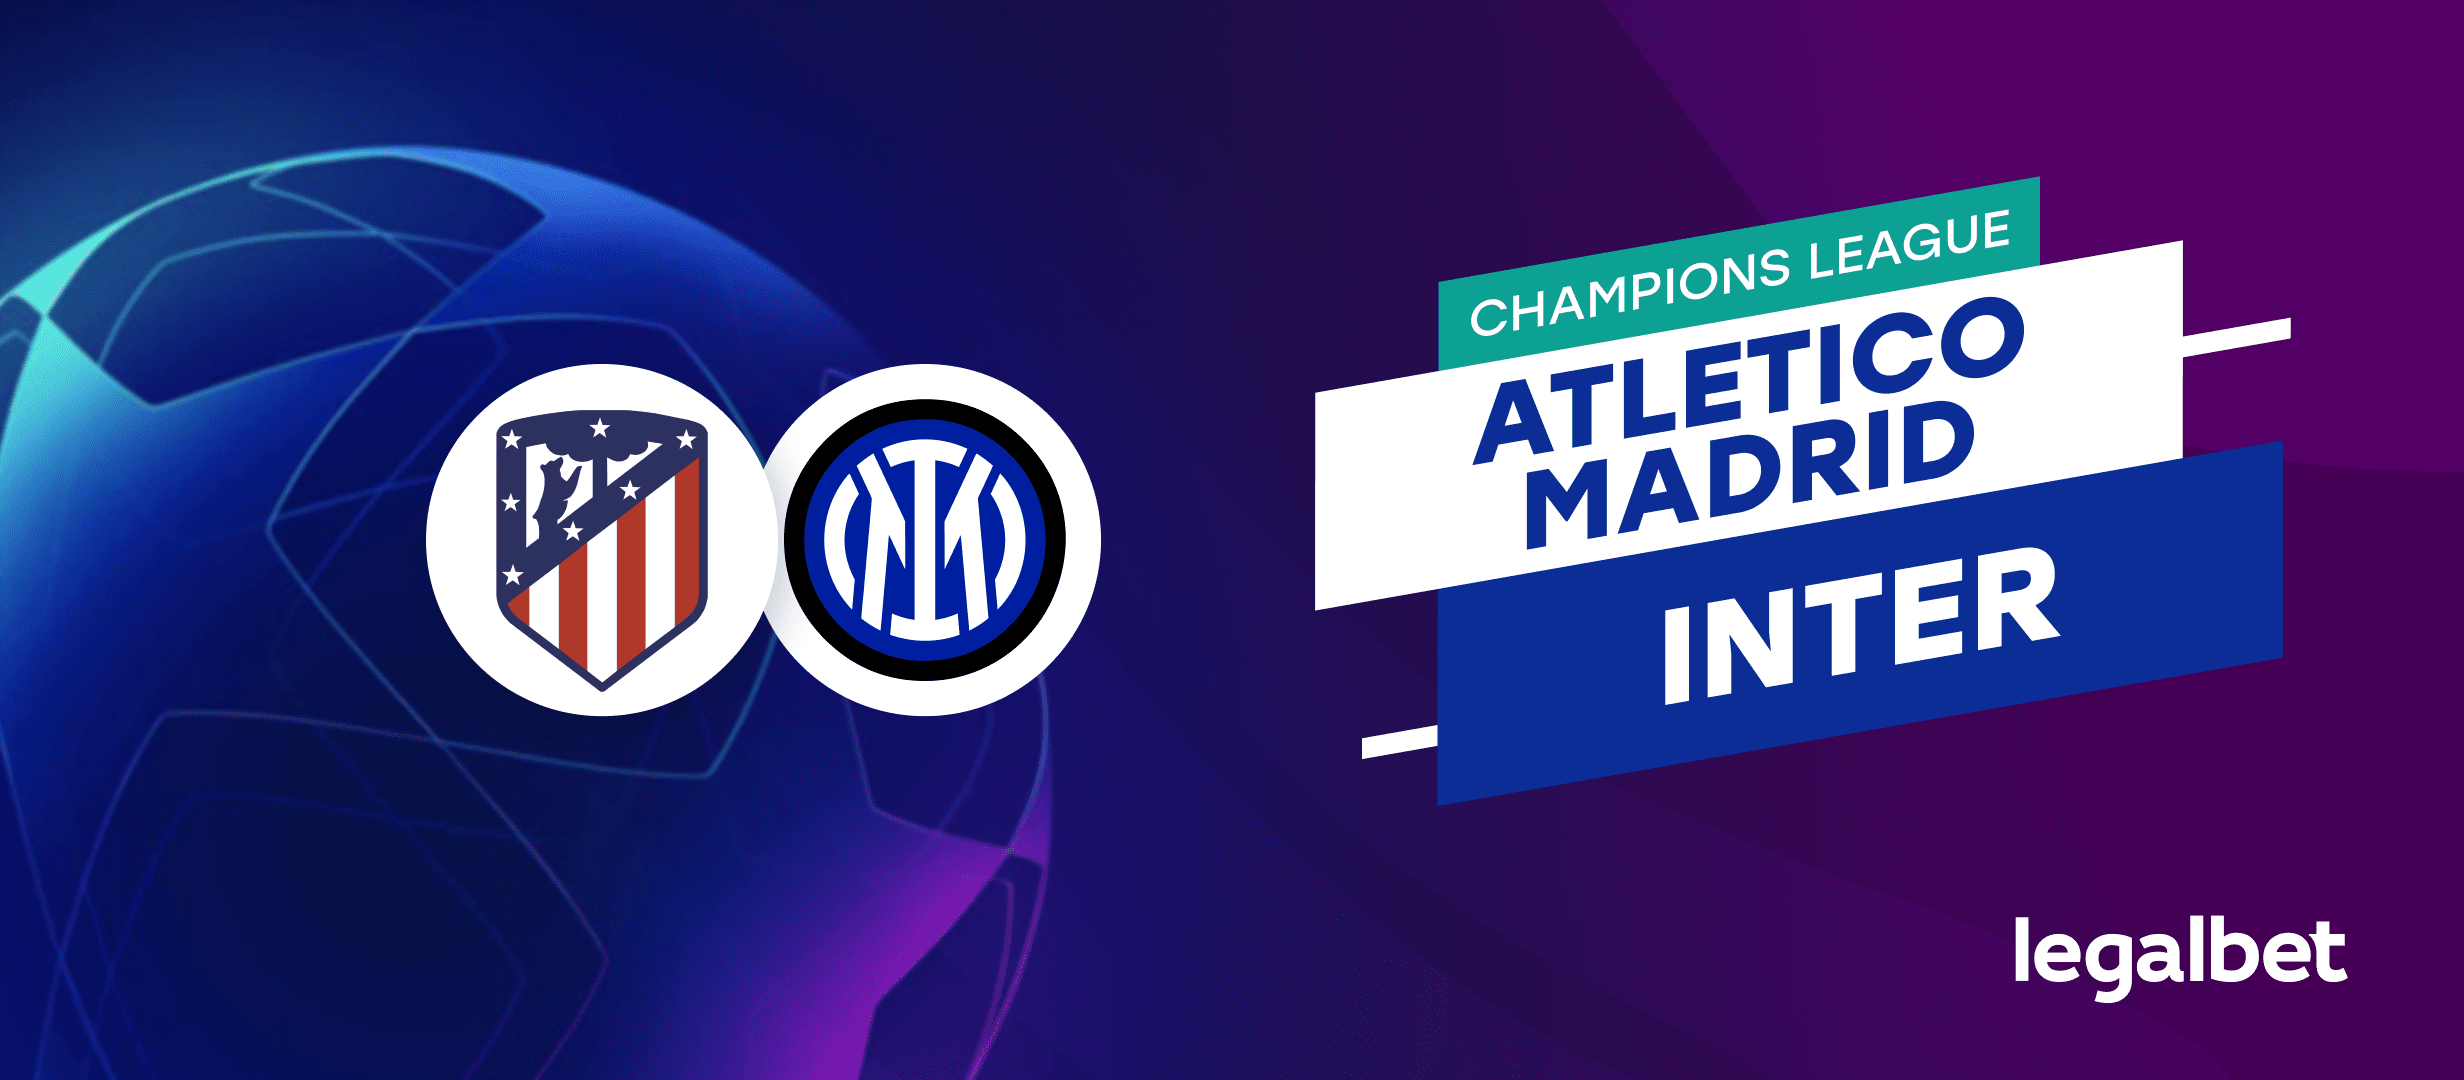 Atlético Madrid - Inter Milano: Ponturi si cote la pariuri